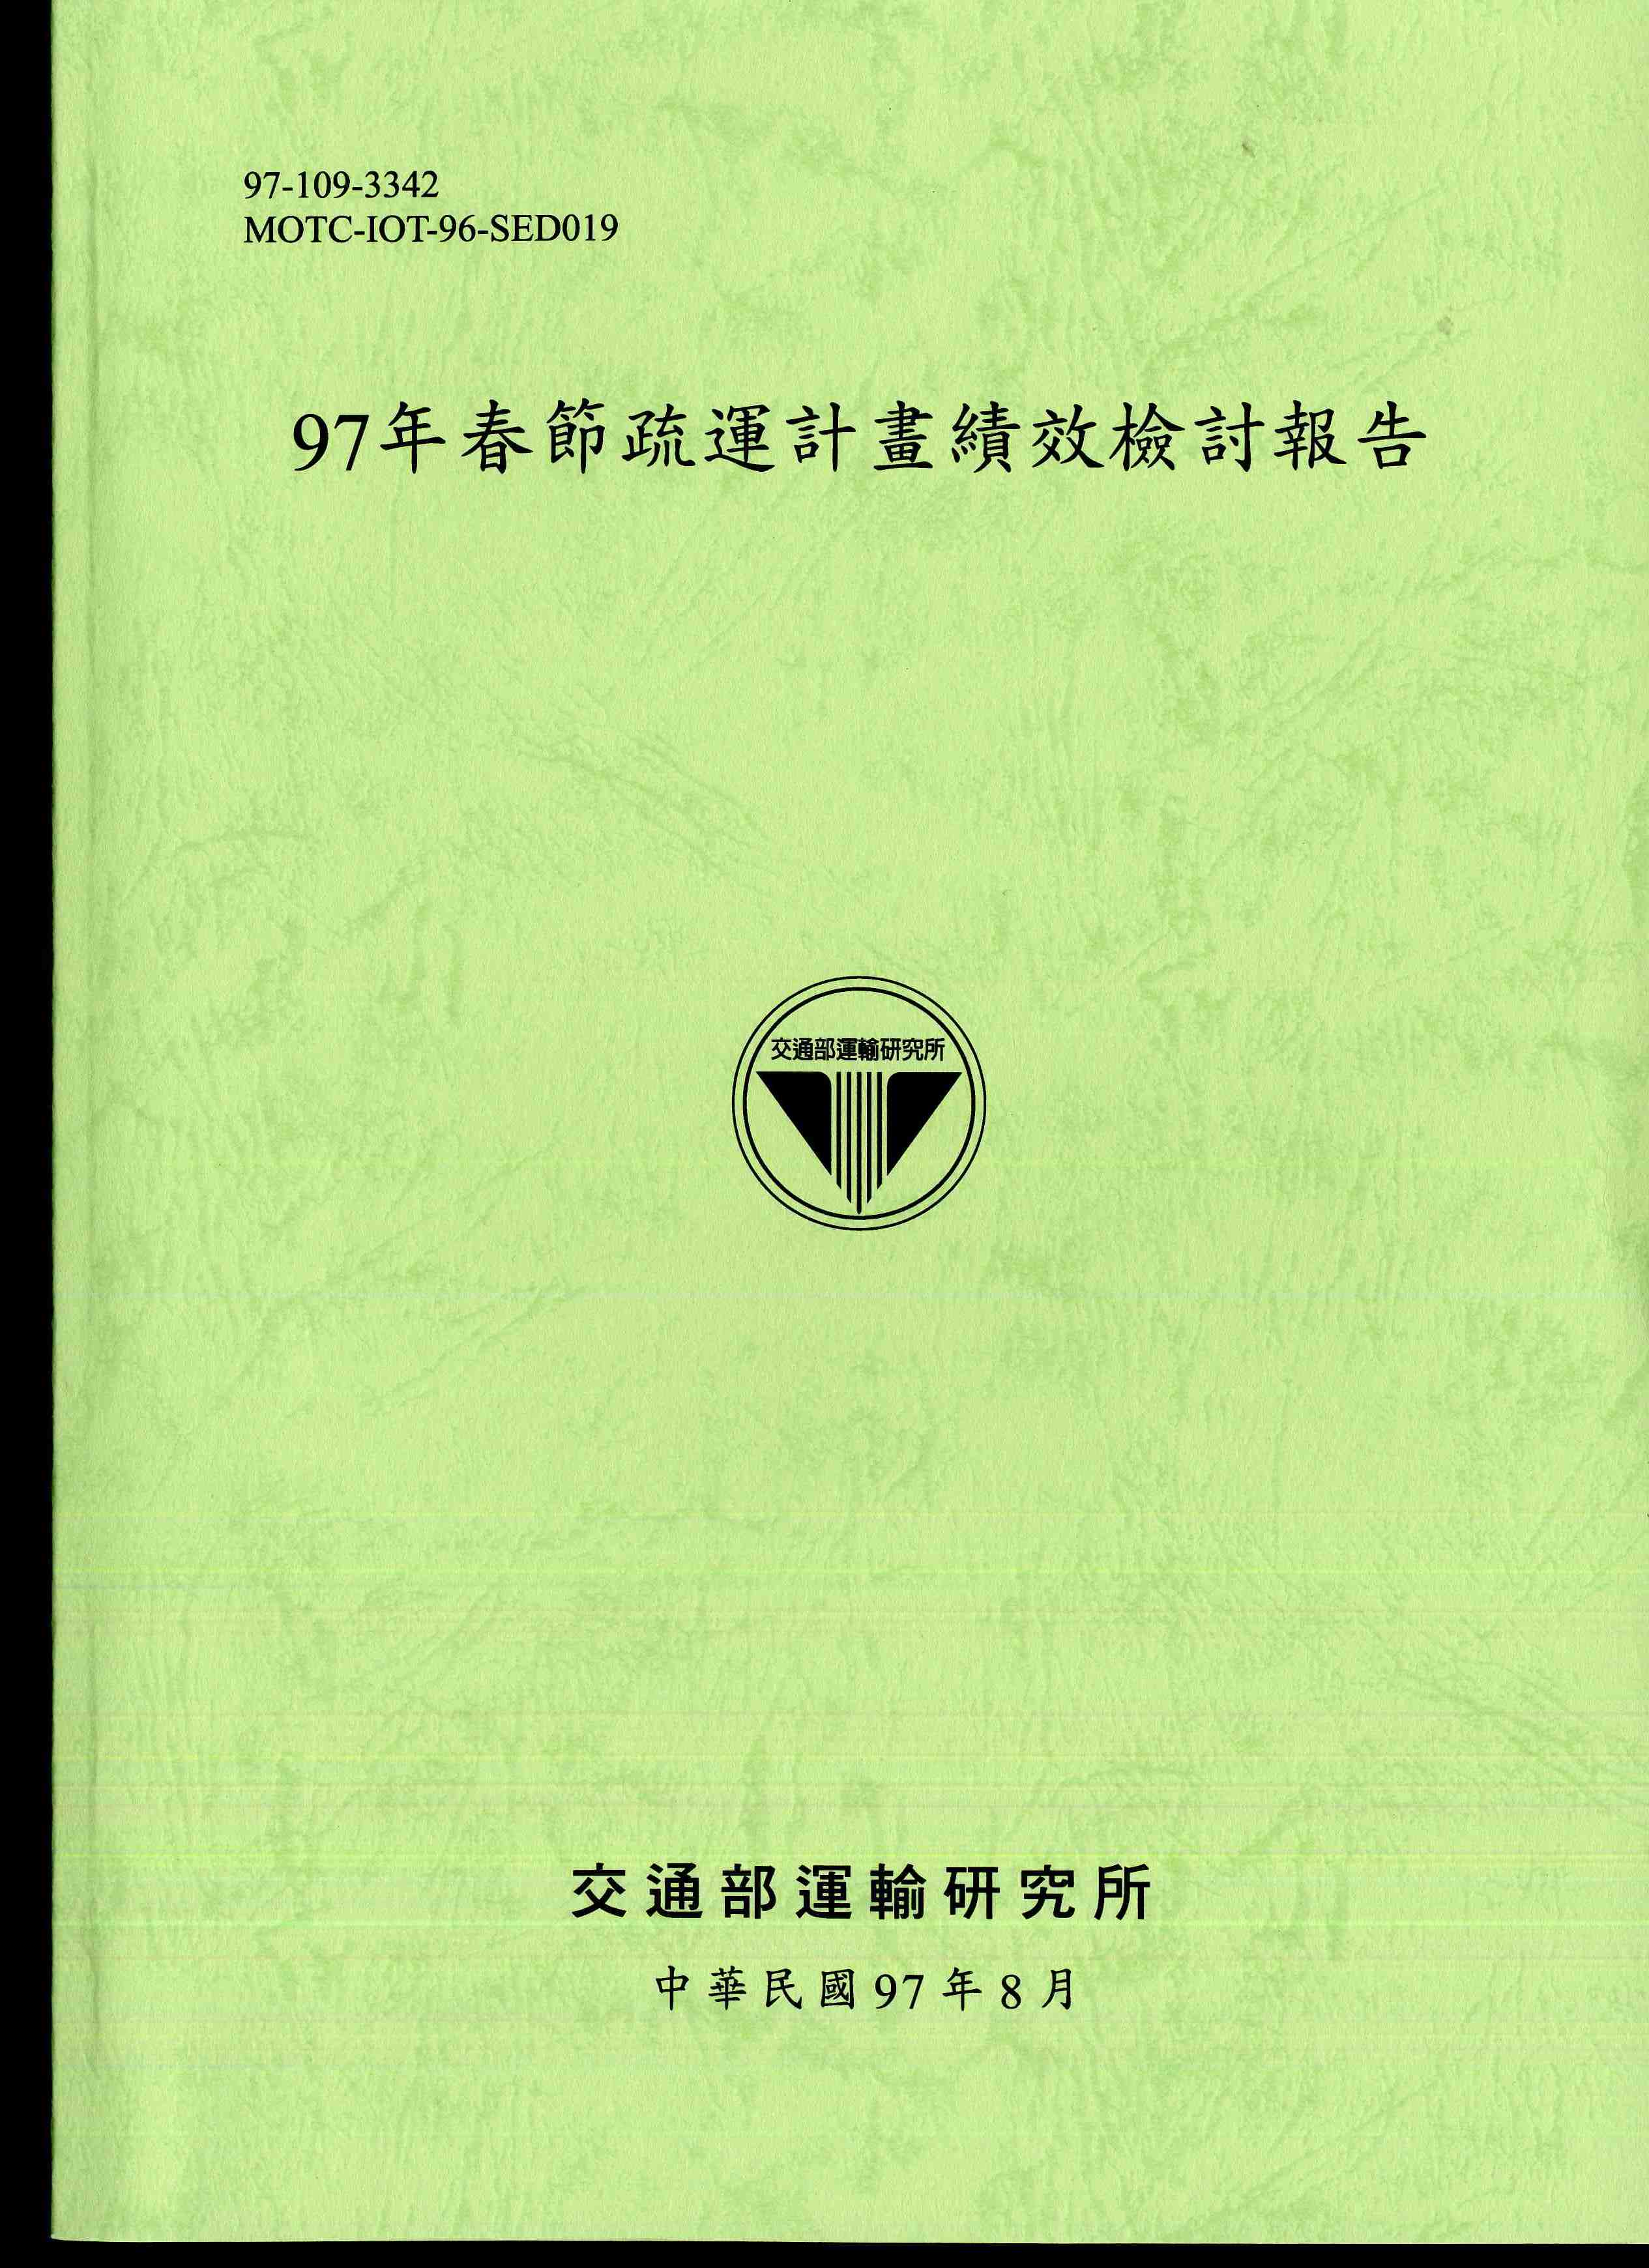 97年春節疏運計畫績效檢討報告